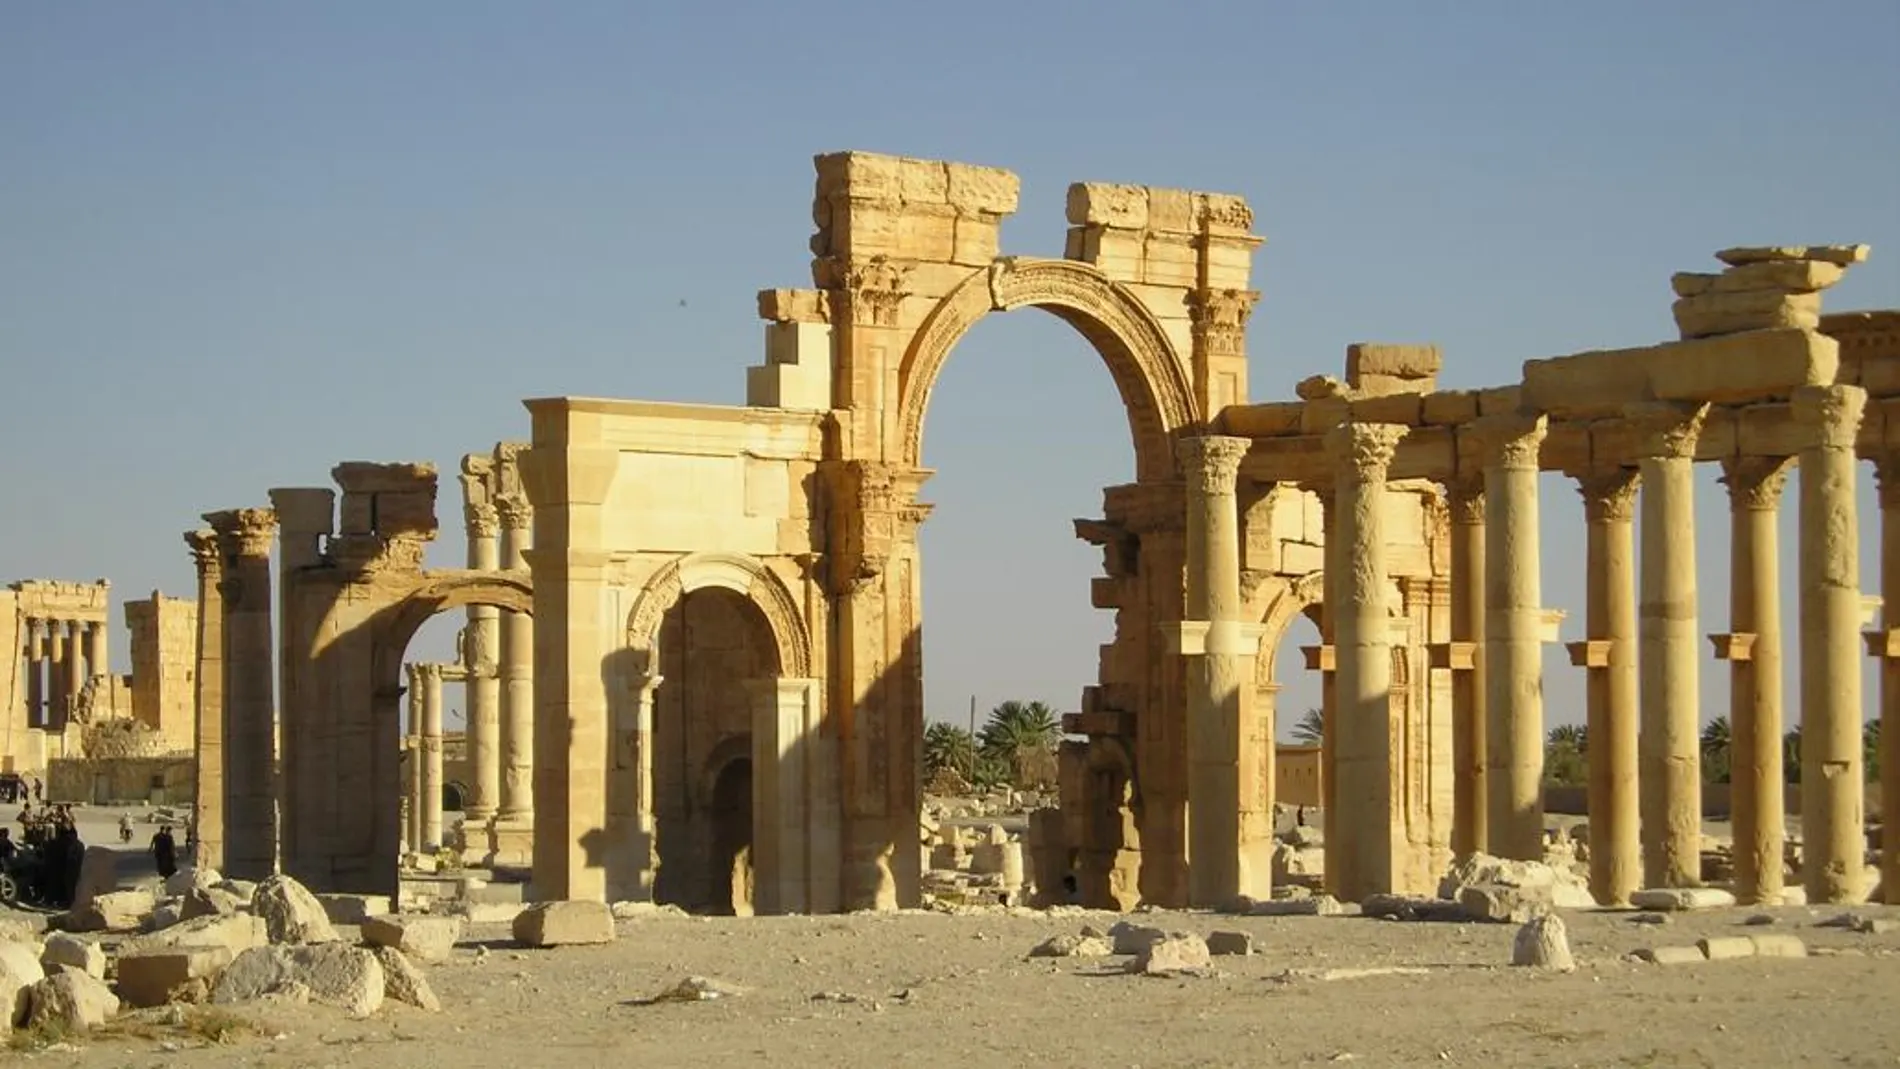 Las ruinas de Palmira, con sus teatros y templos, eran uno de los principales centros turísticos de Siria